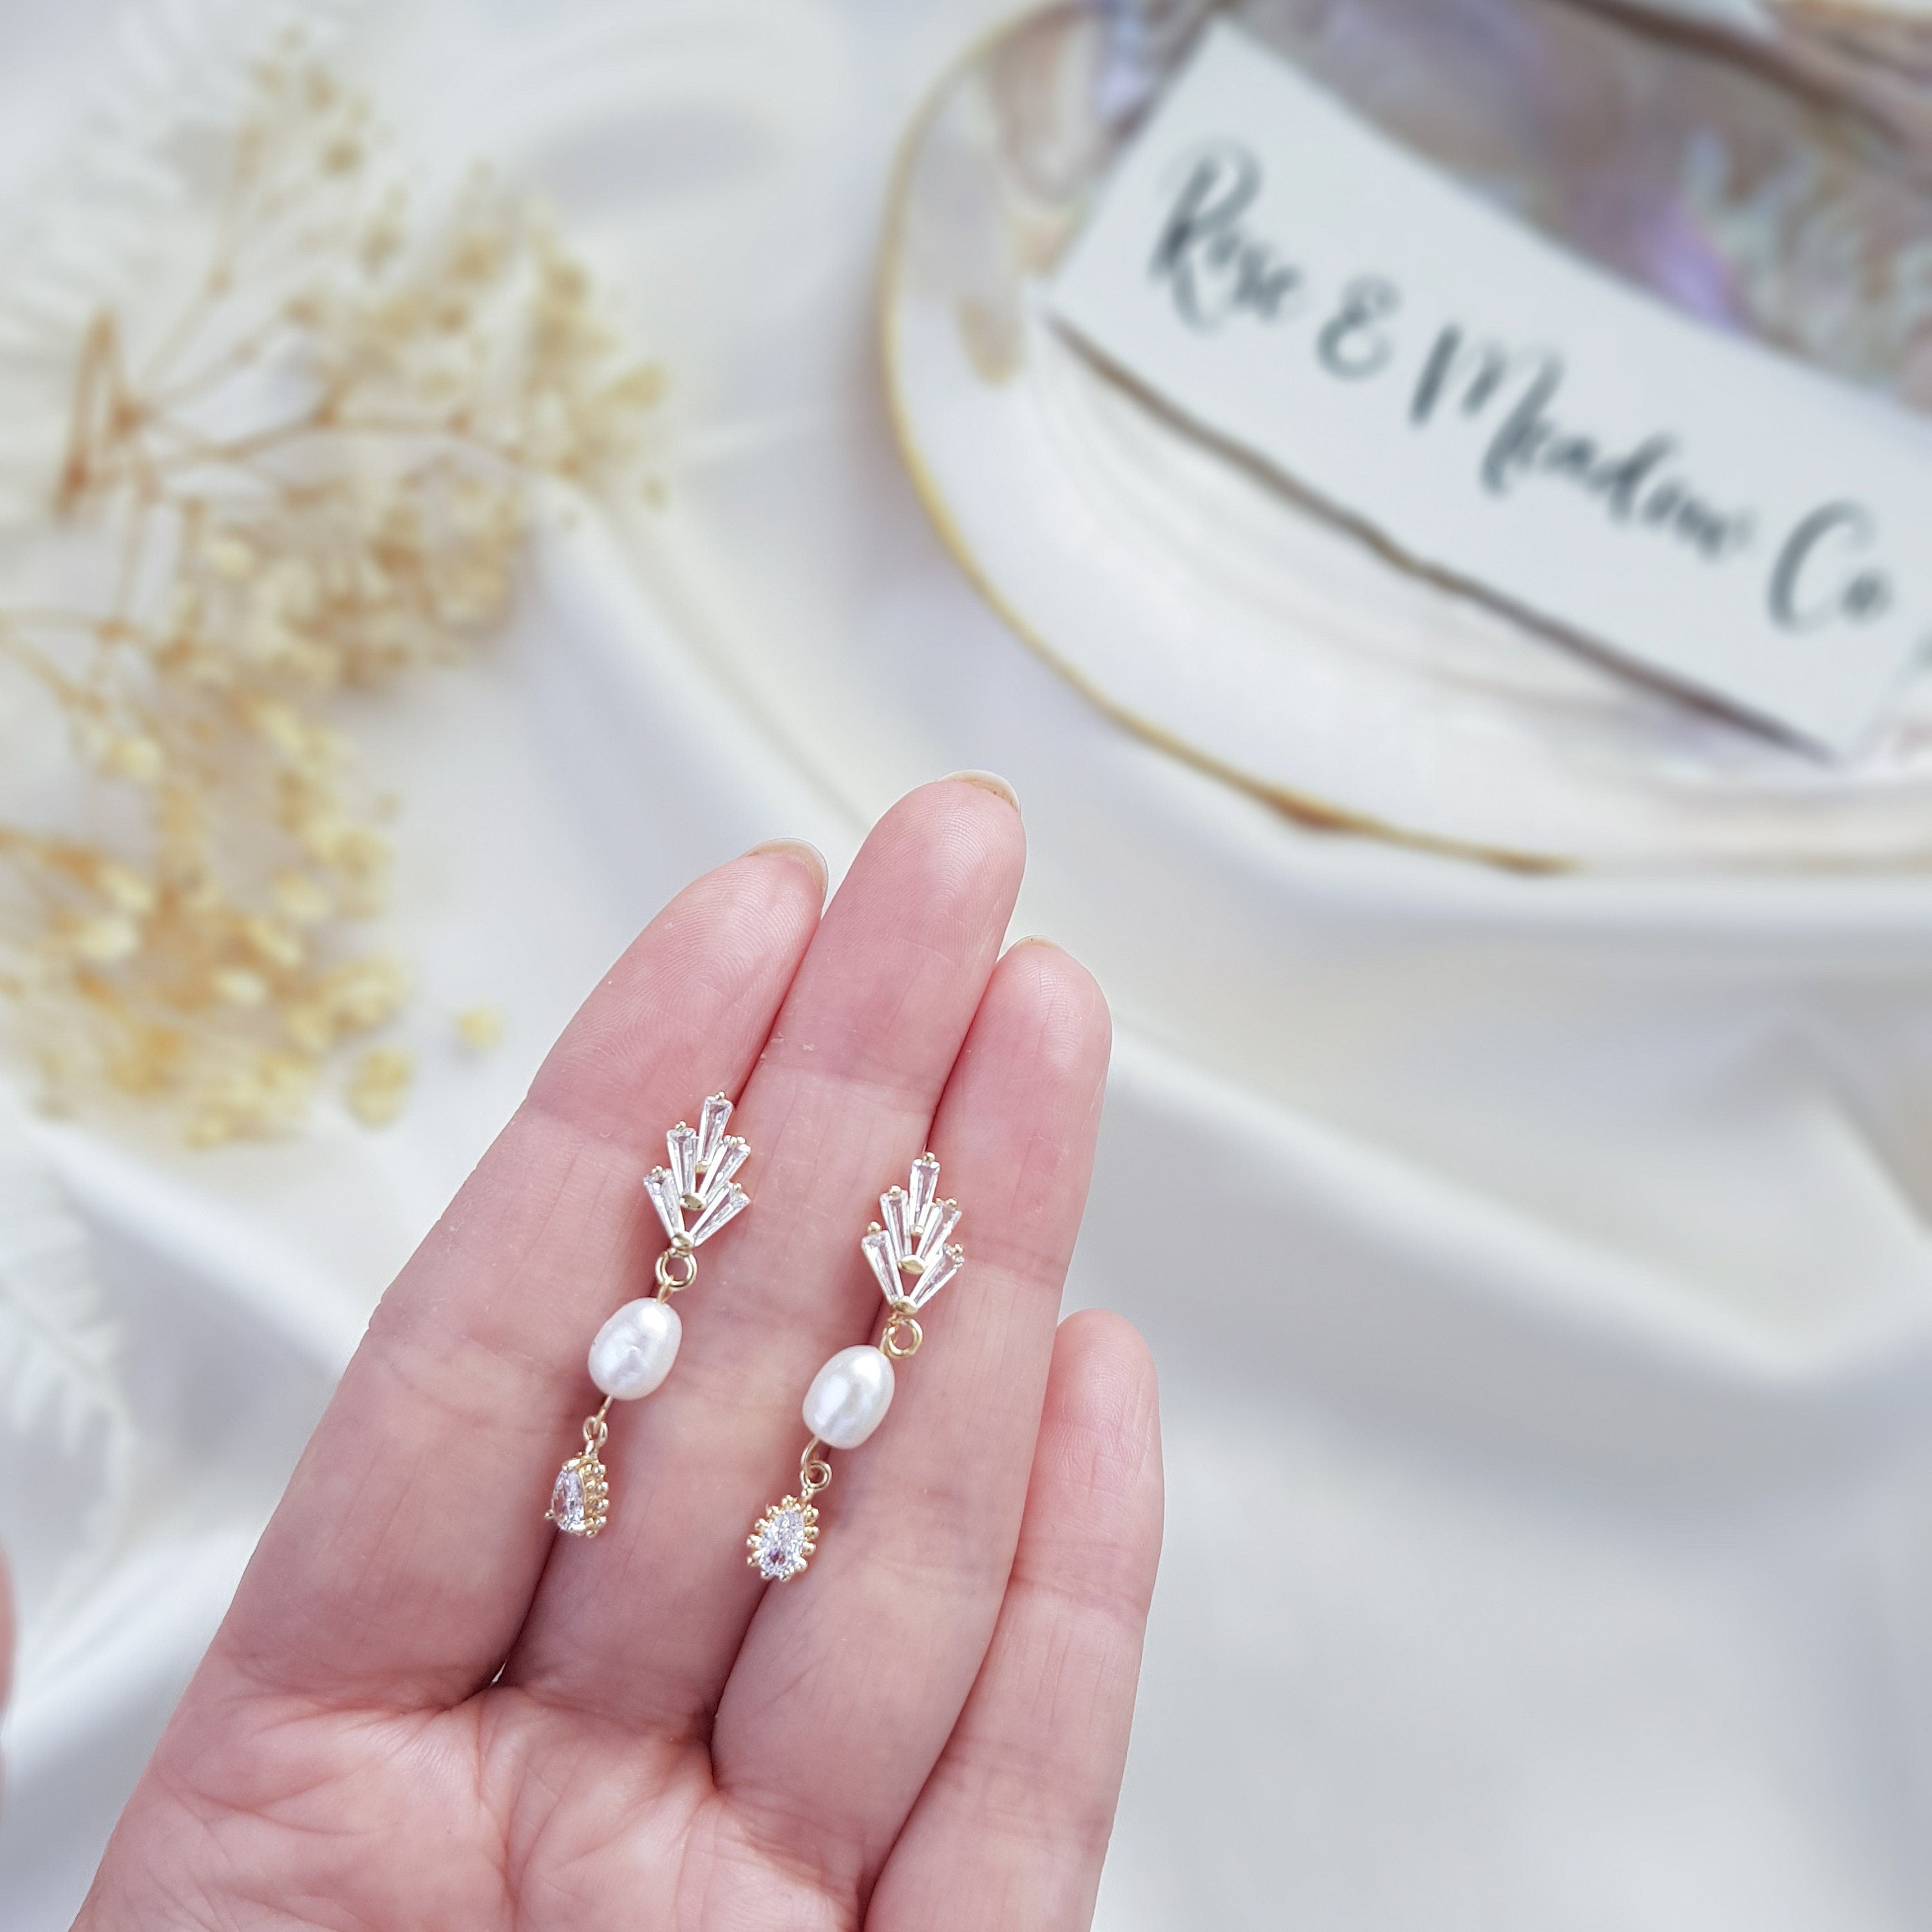 Pearl Drop Earrings, Bridal Earrings, Vintage Style Earrings, Gold Pearl Earrings, Wedding Earrings, Bridesmaid Gift, Crystal Earrings